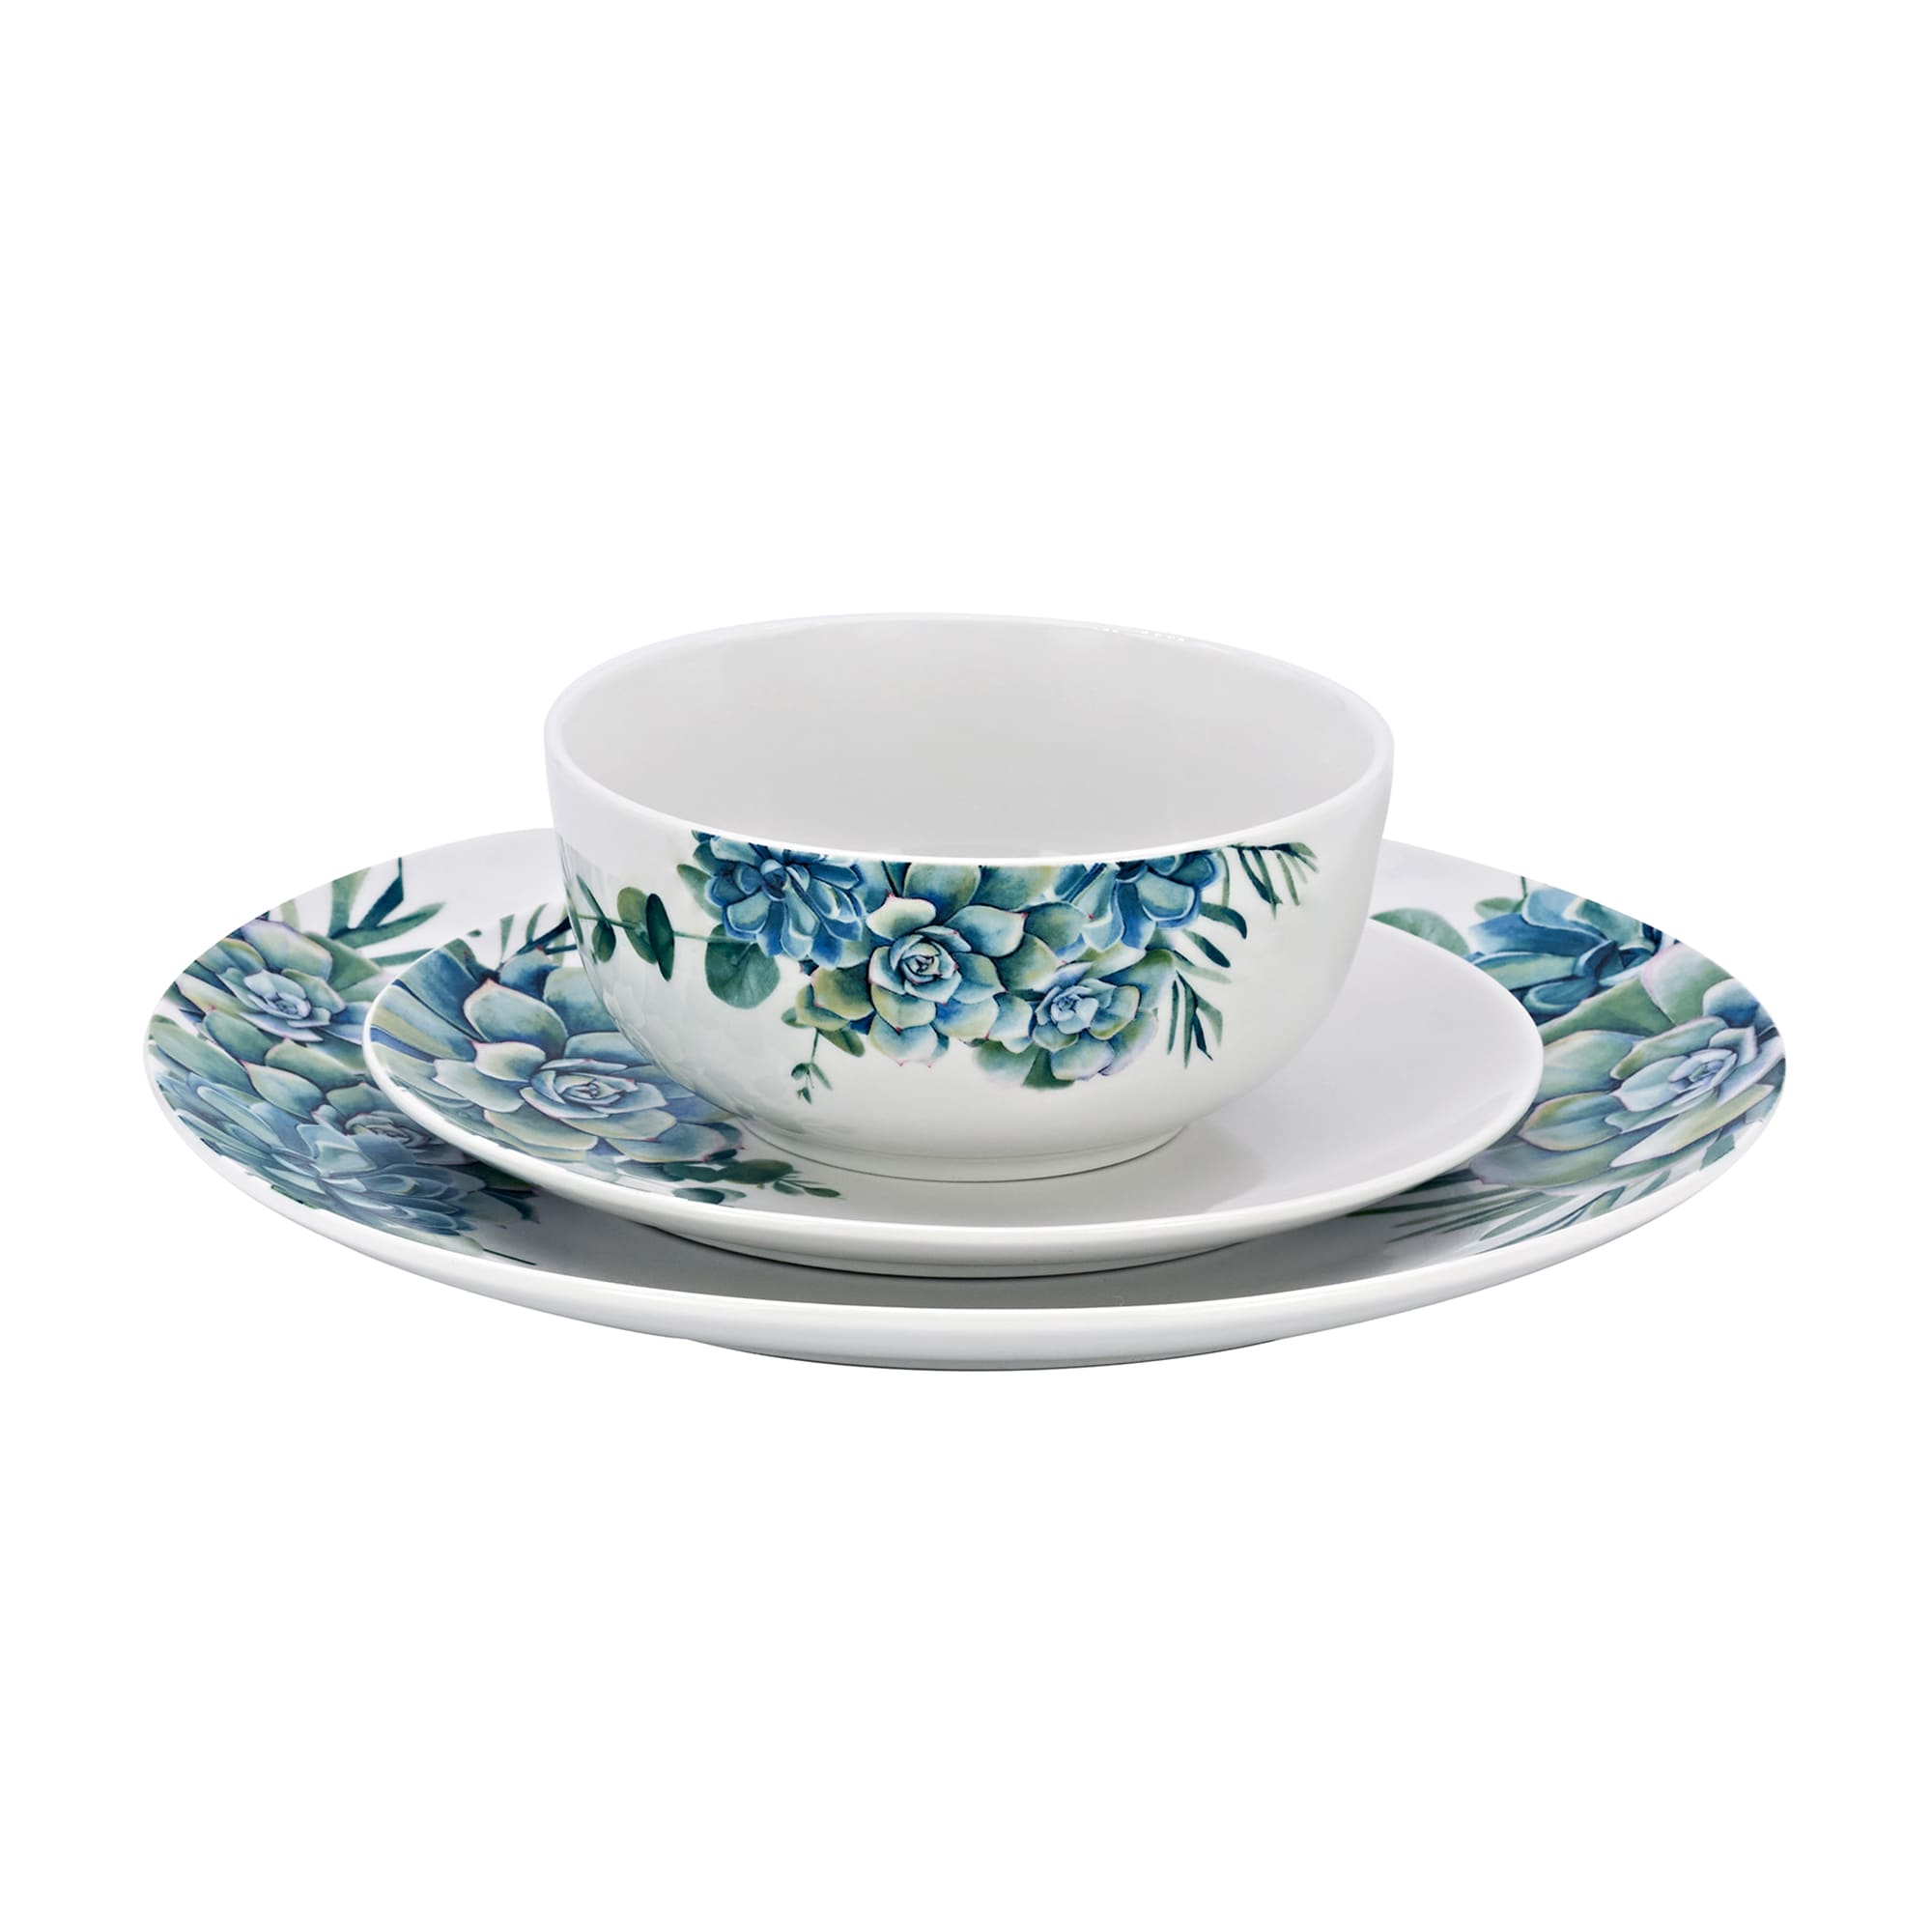 Godinger 12-pc. Service for 4 | Succulent Dinnerware Set Ross-Simons Porcelain